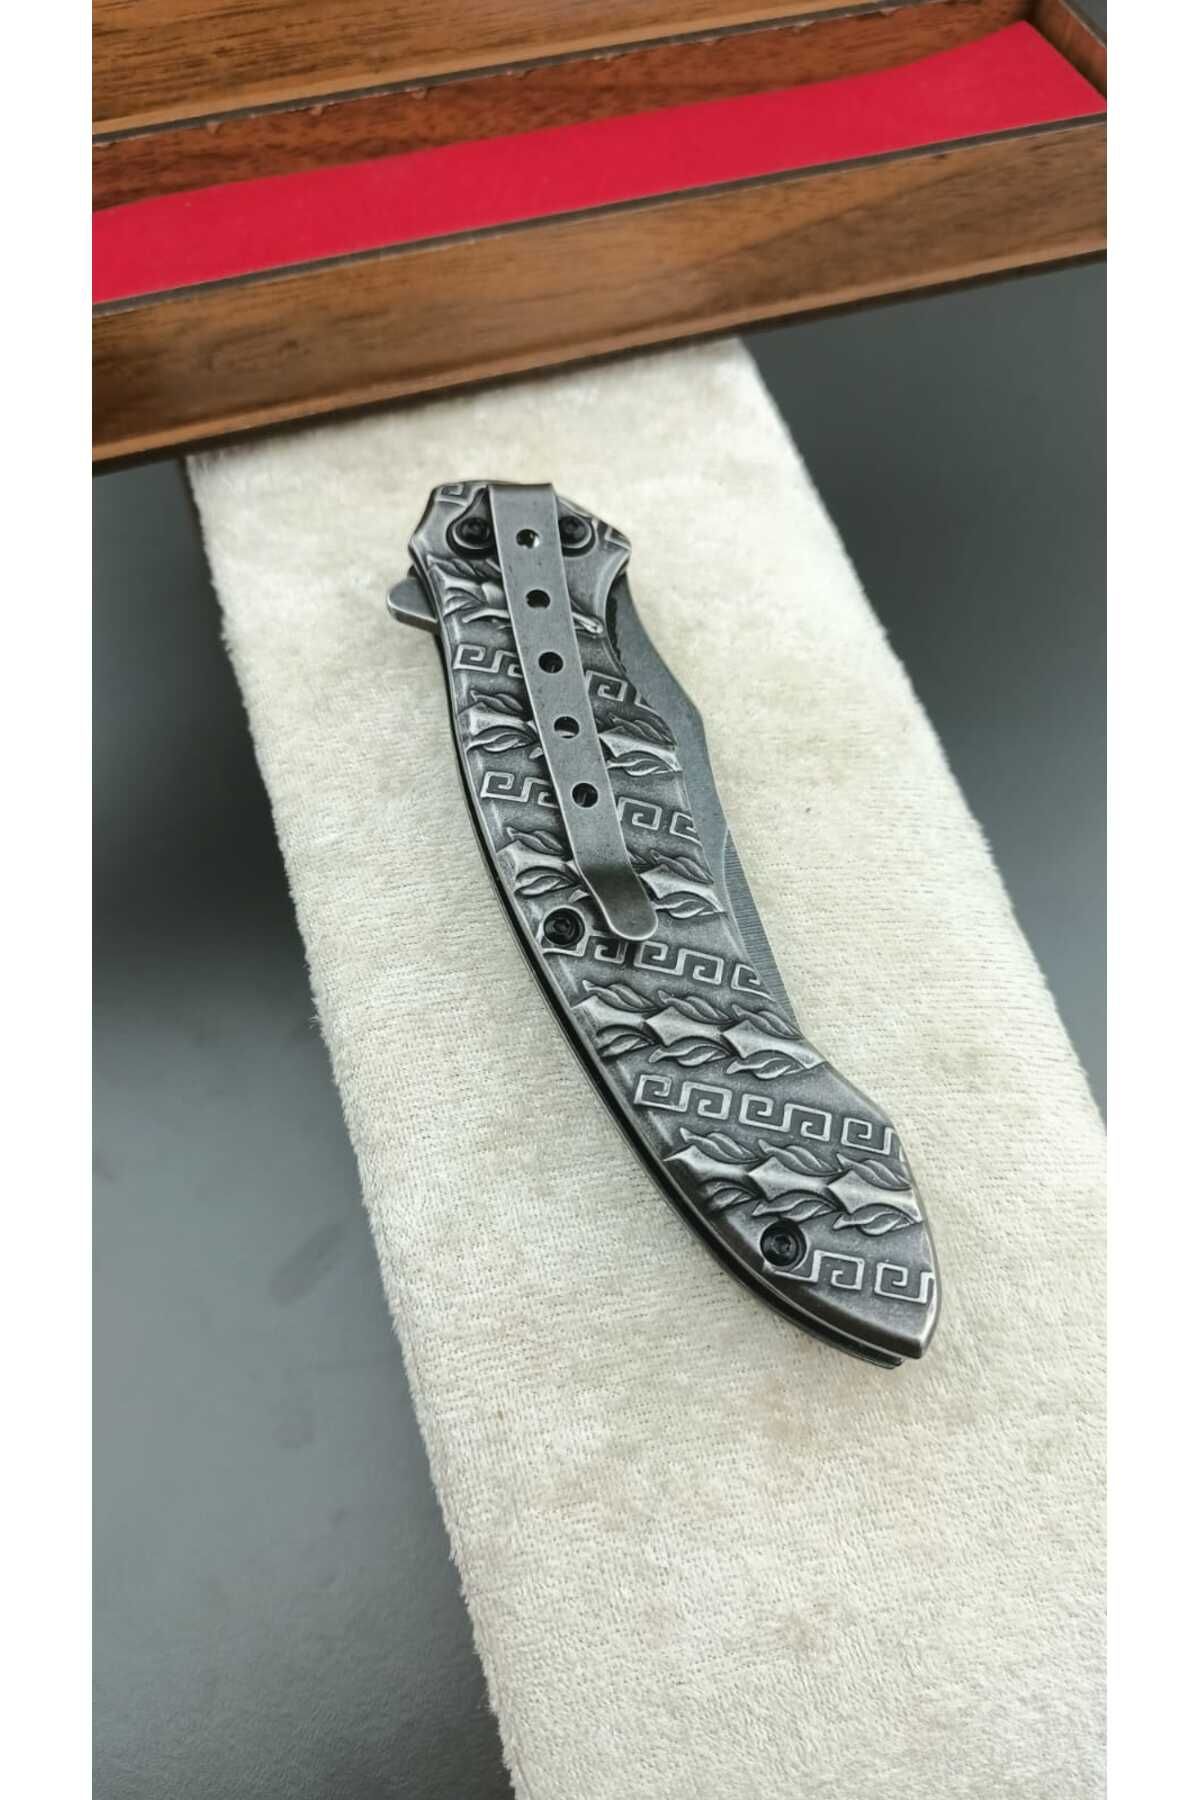 SAİD UYAR Çakı - Bıçak Metal Renk Işlemeli Model Koleksiyon Amaçlı Sustalı Benzeri